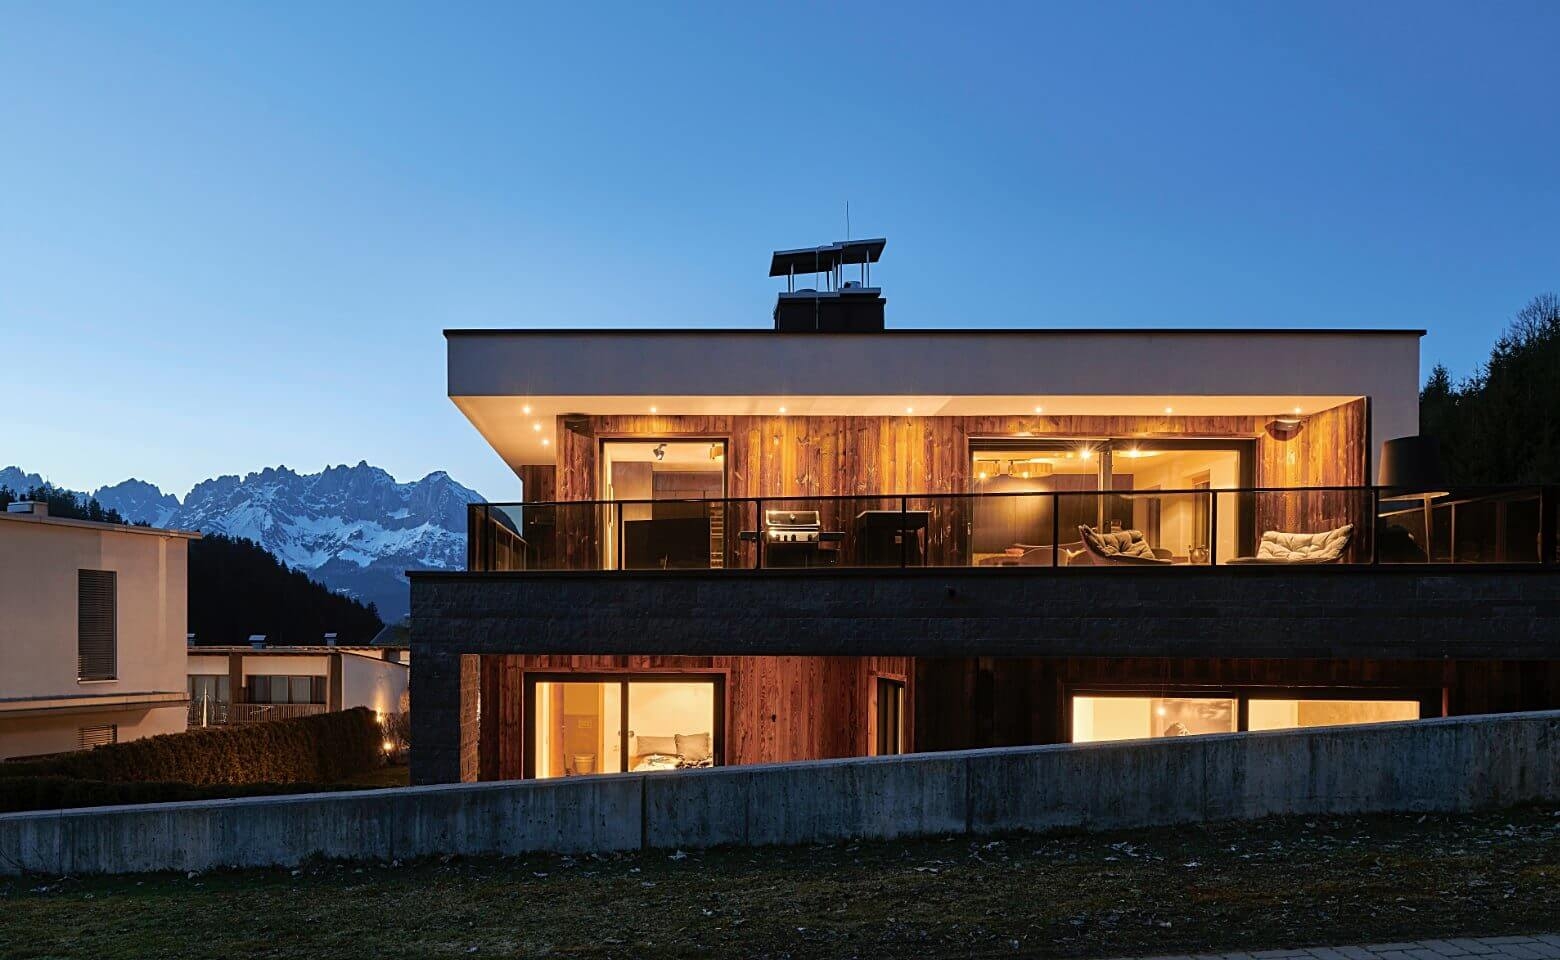 kitzbuhel chalet cottages cabins chalets austria tyrol 26 0x960 c center